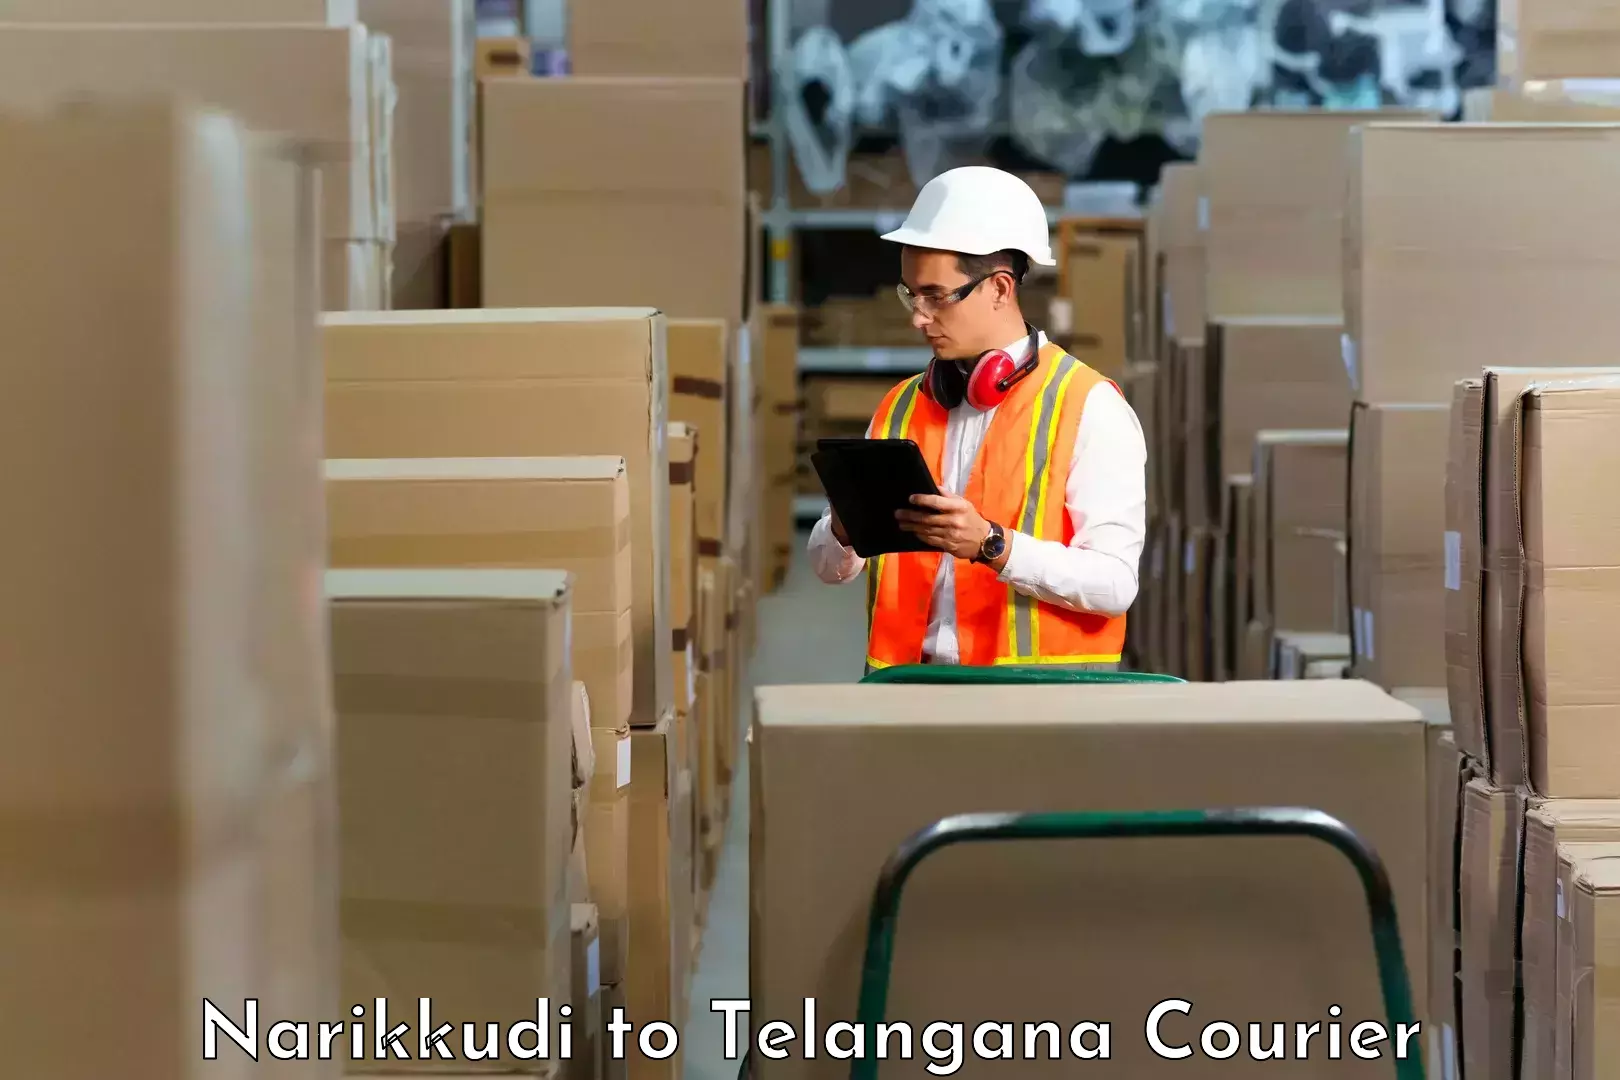 Courier service partnerships Narikkudi to Gangadhara